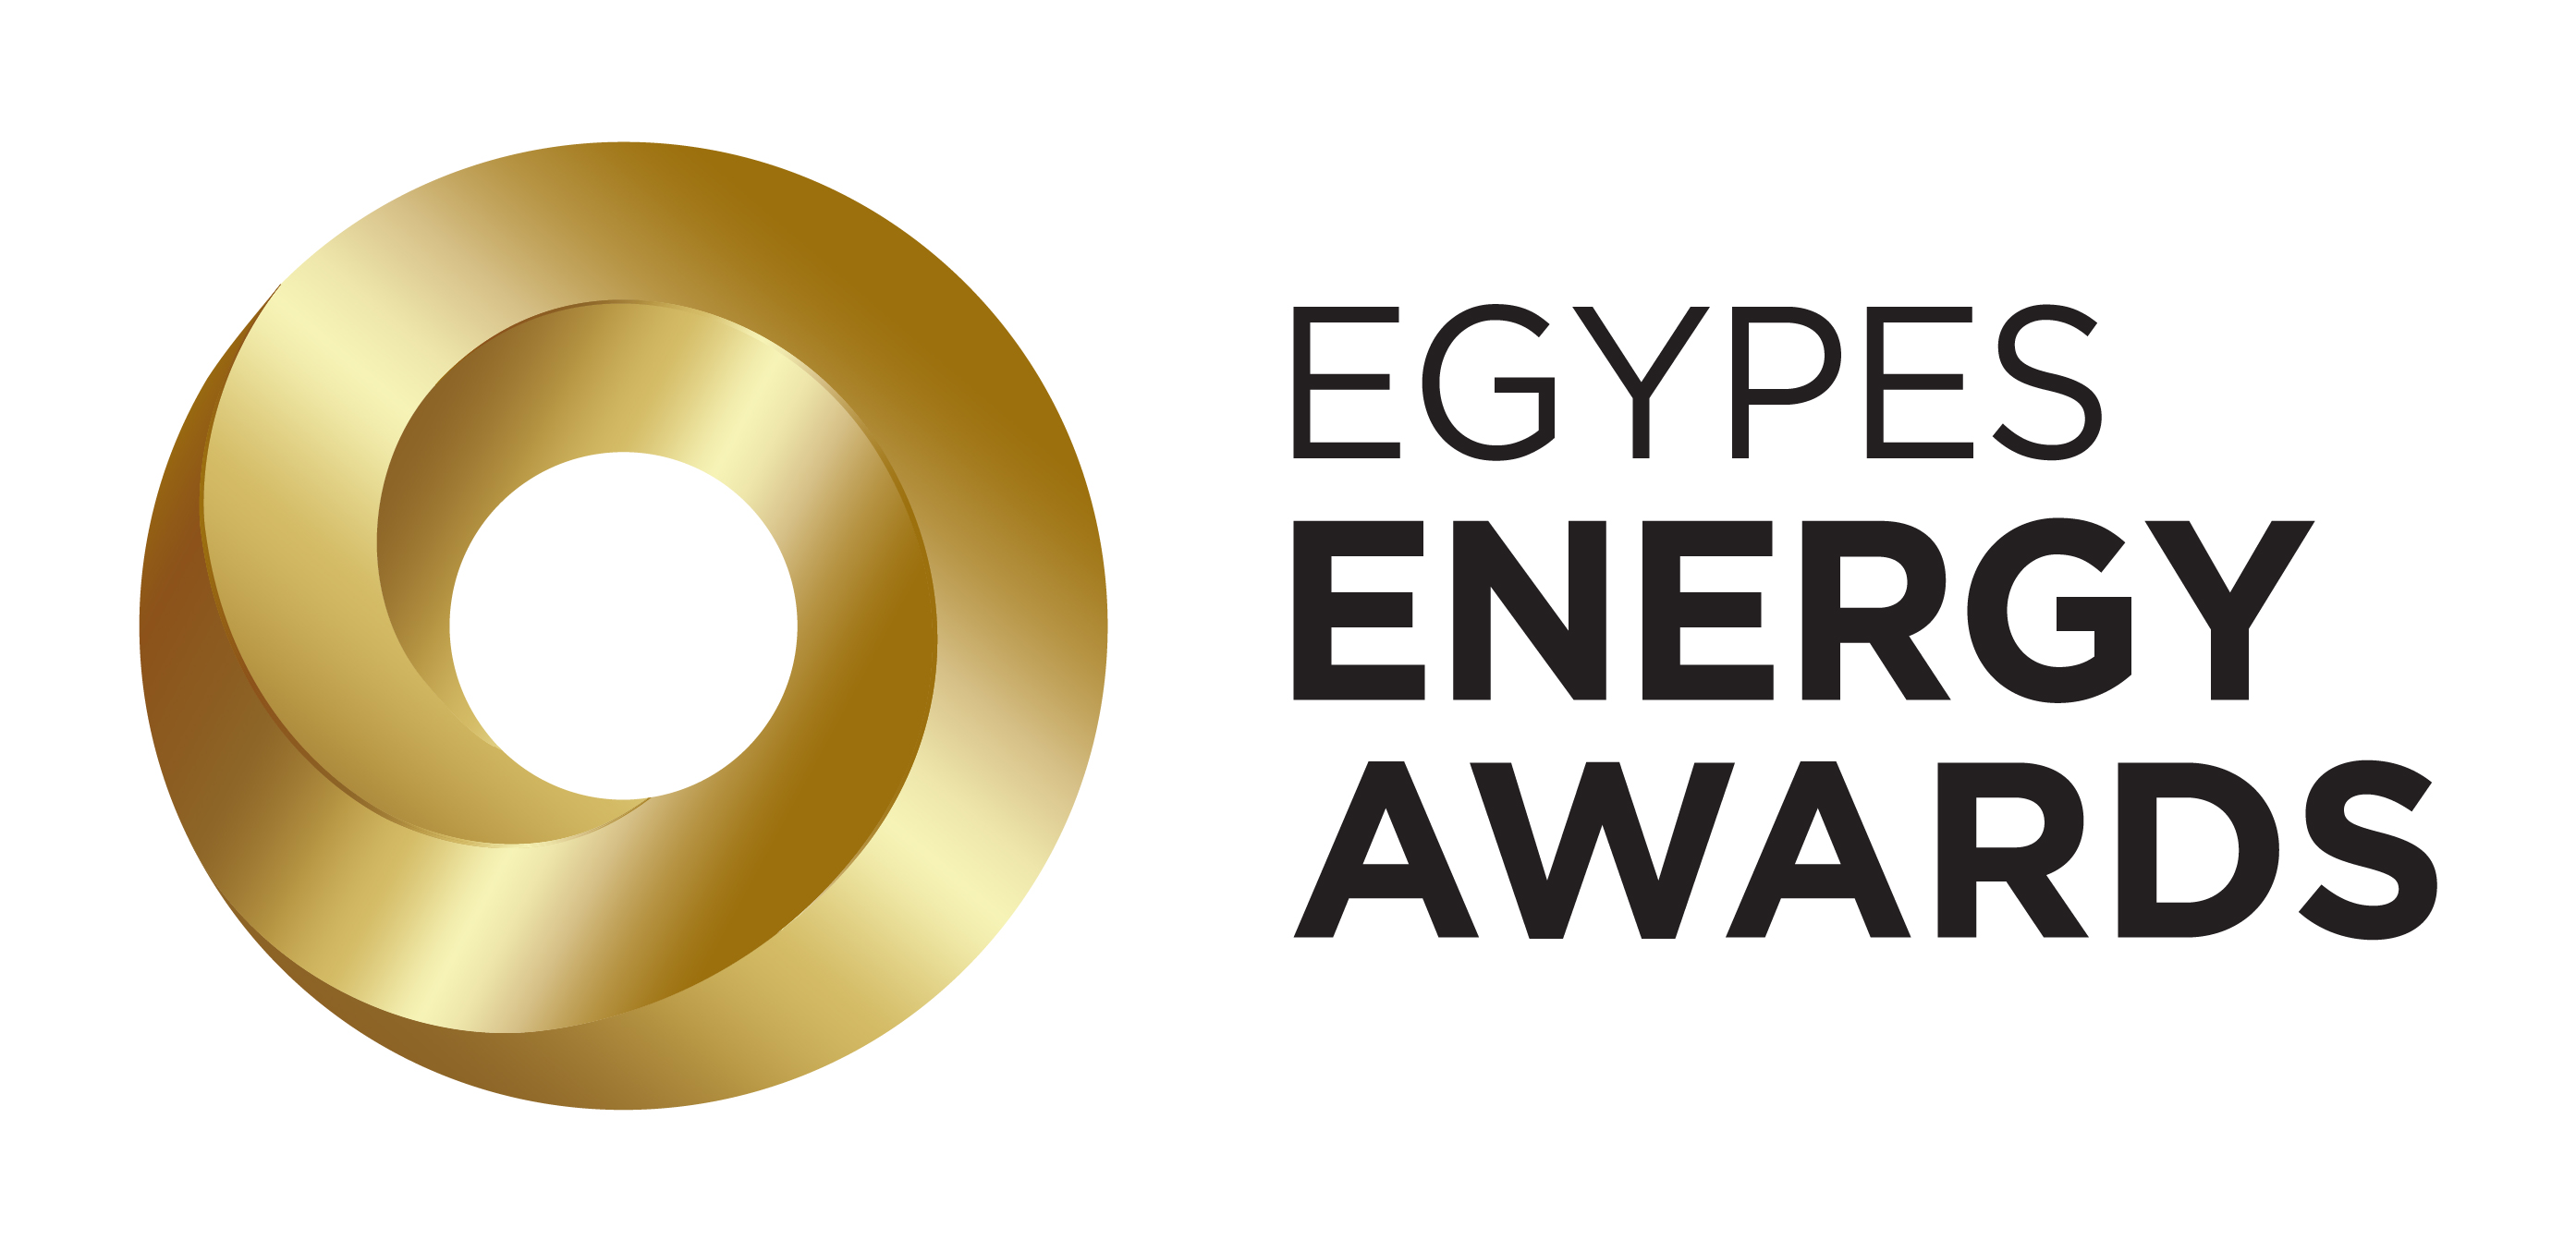 EGYPES Awards Logo Without MOP